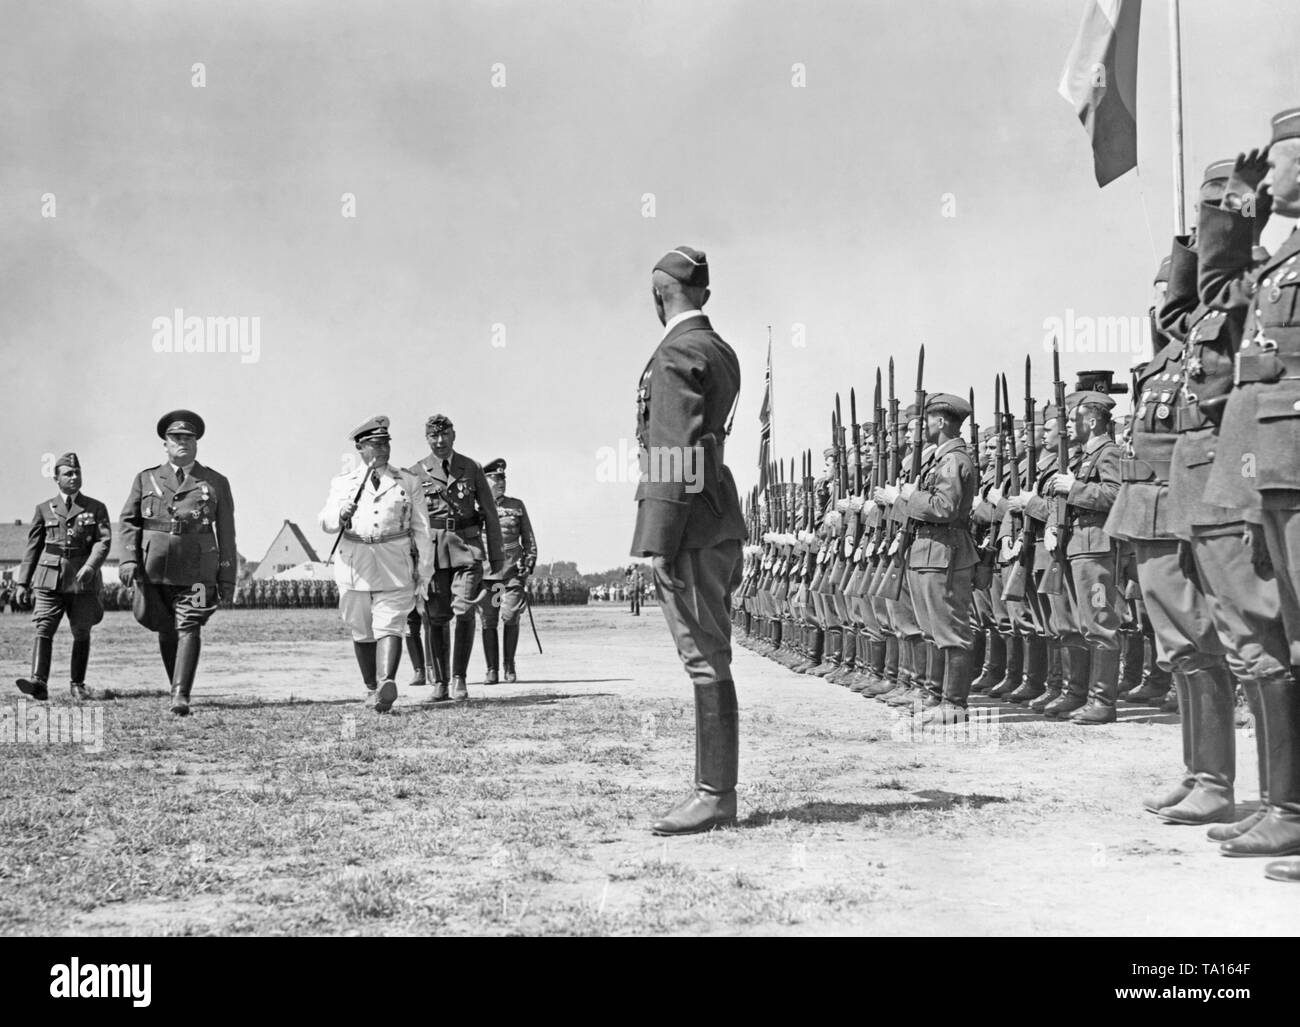 Anlässlich der Rückkehr der Legion Condor im Spanischen Bürgerkrieg, Hermann Göring (weiße Uniform) ist die Inspektion der Truppen in Doeberitz in der Nähe von Berlin am 5. Juni 1939. Zu seiner Linken, General der Flieger Hugo Sperrle, rechts, General der Flieger Hellmuth Volkmann (sowohl in der Uniform der Legion). Stockfoto